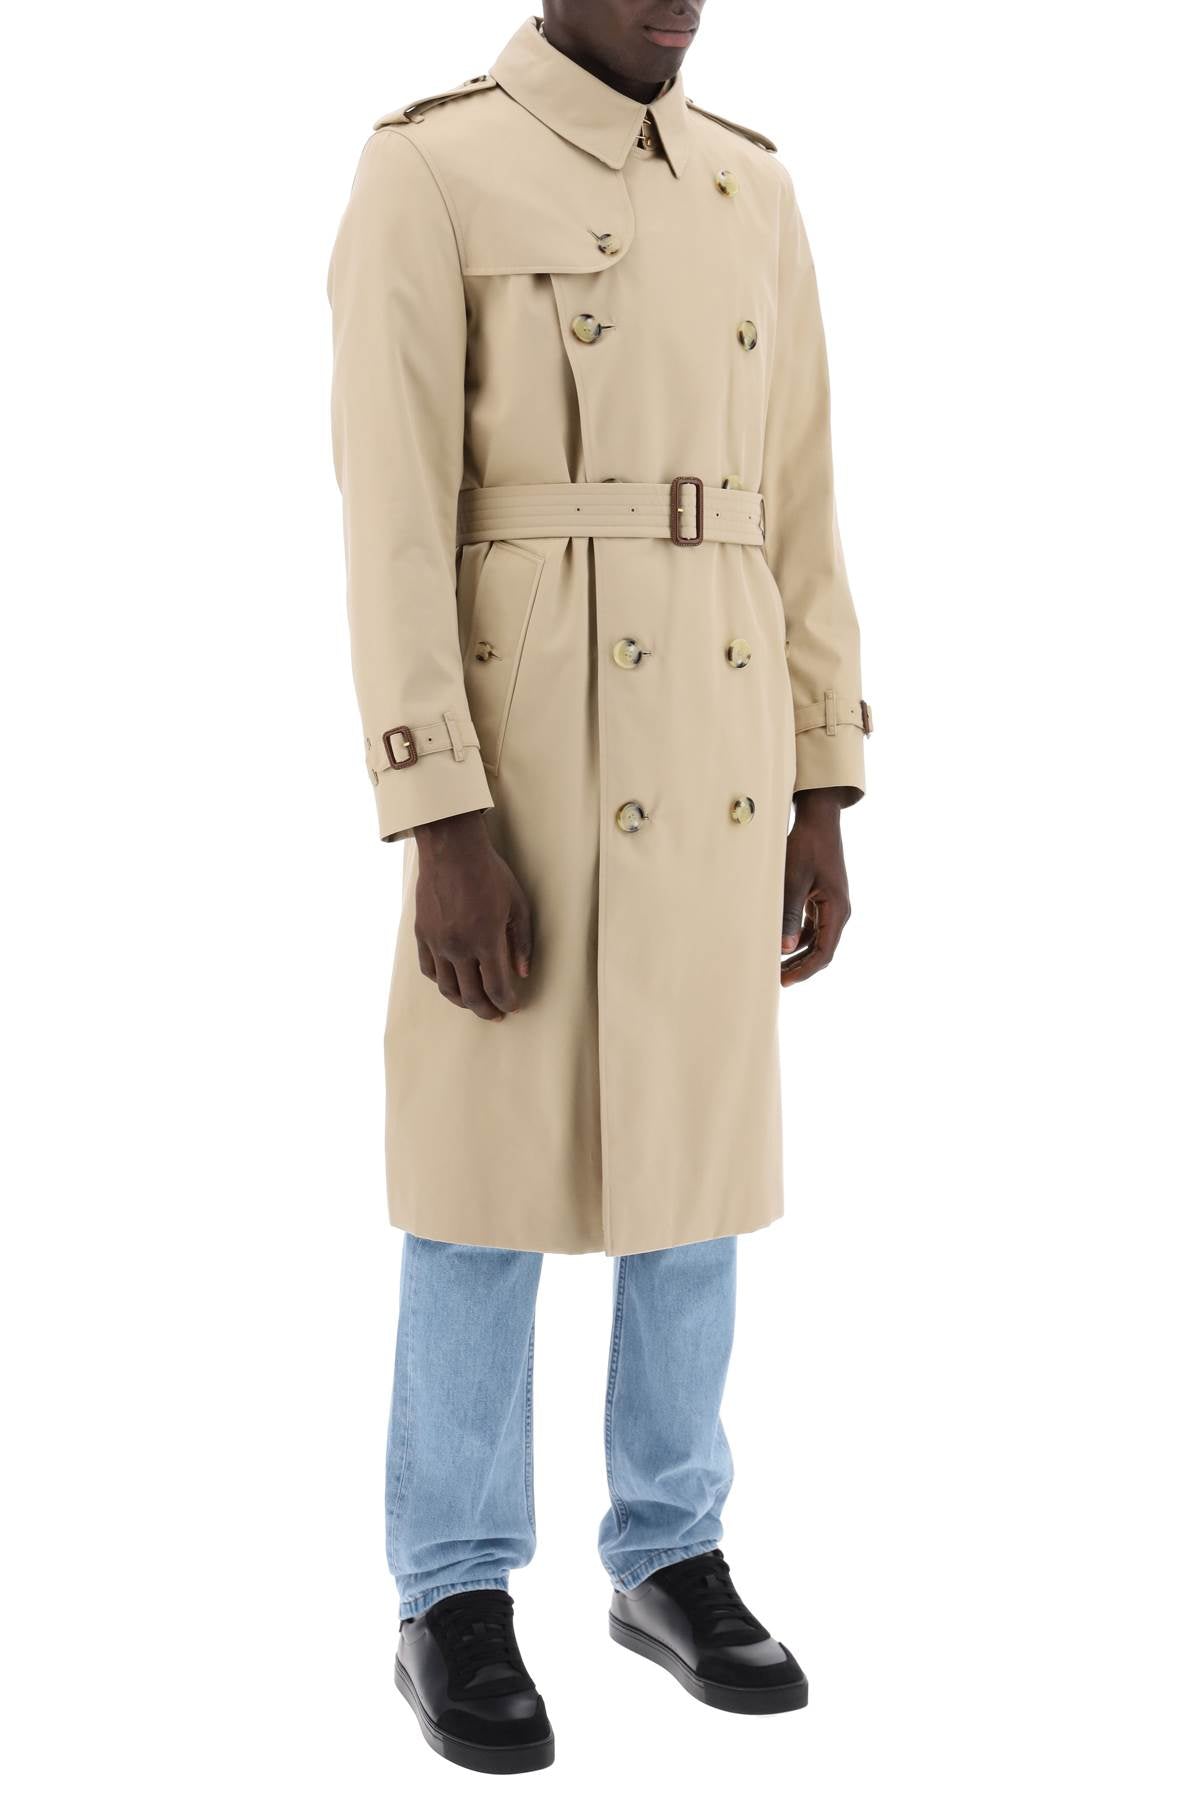 BURBERRY Men's Rain-Resistant Kensington Trench Coat in Beige